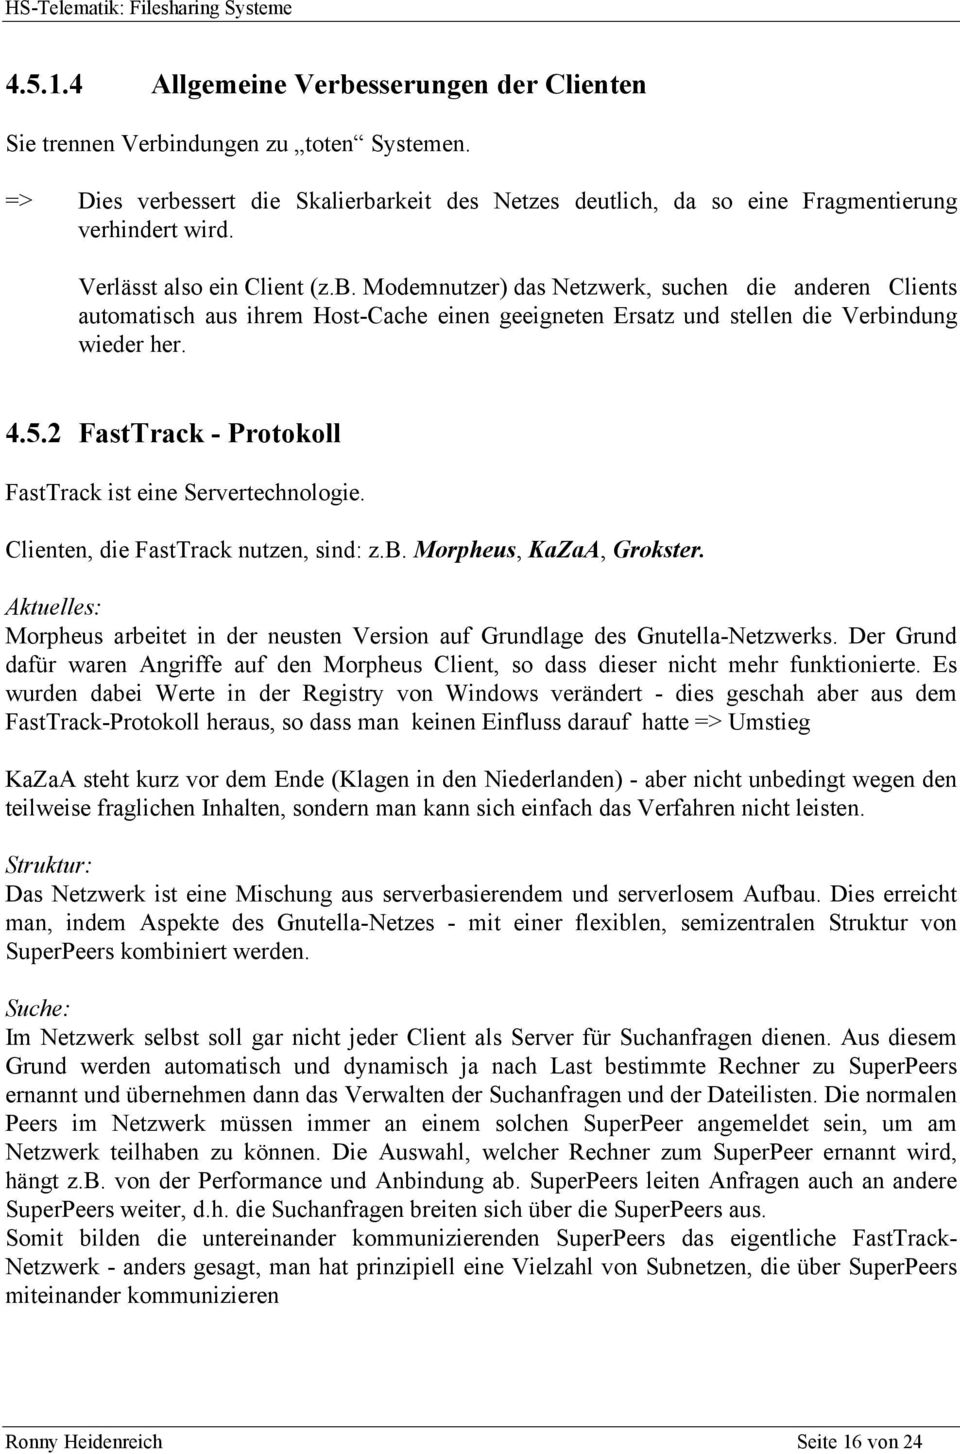 2 FastTrack - Protokoll FastTrack ist eine Servertechnologie. Clienten, die FastTrack nutzen, sind: z.b. Morpheus, KaZaA, Grokster.